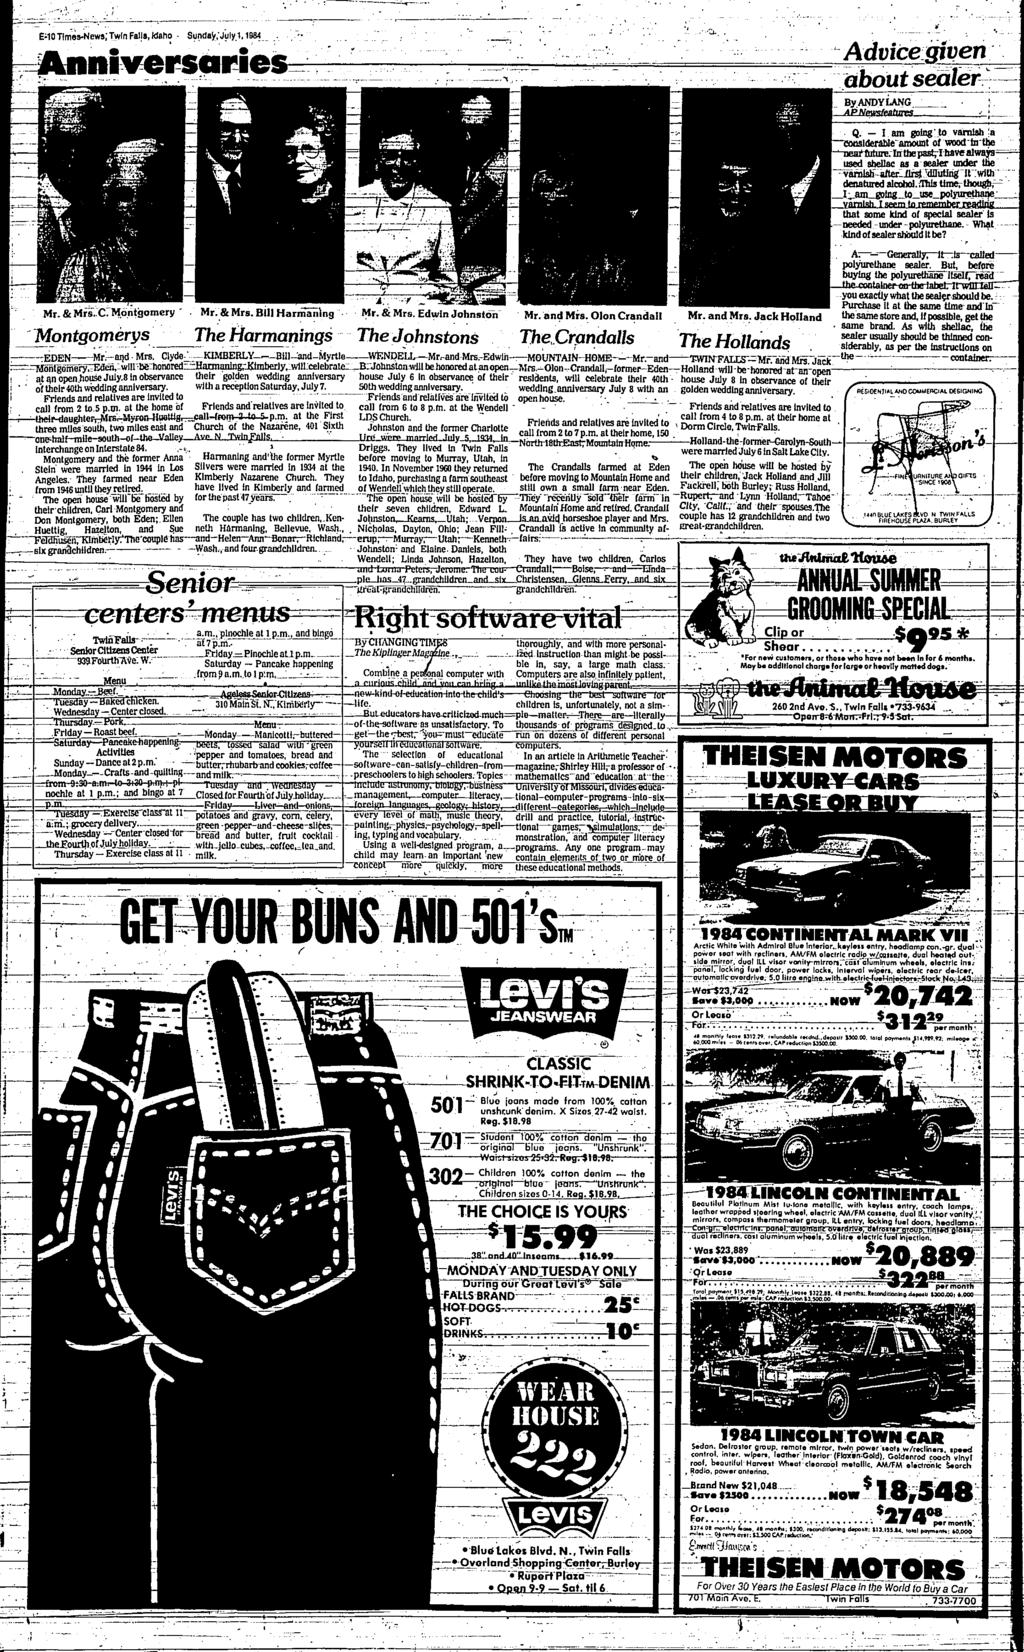 E10H89*News;Twln vn Falls, kbho - Sunday,July uly.1,1984 ersqg* es= ----------- %,.